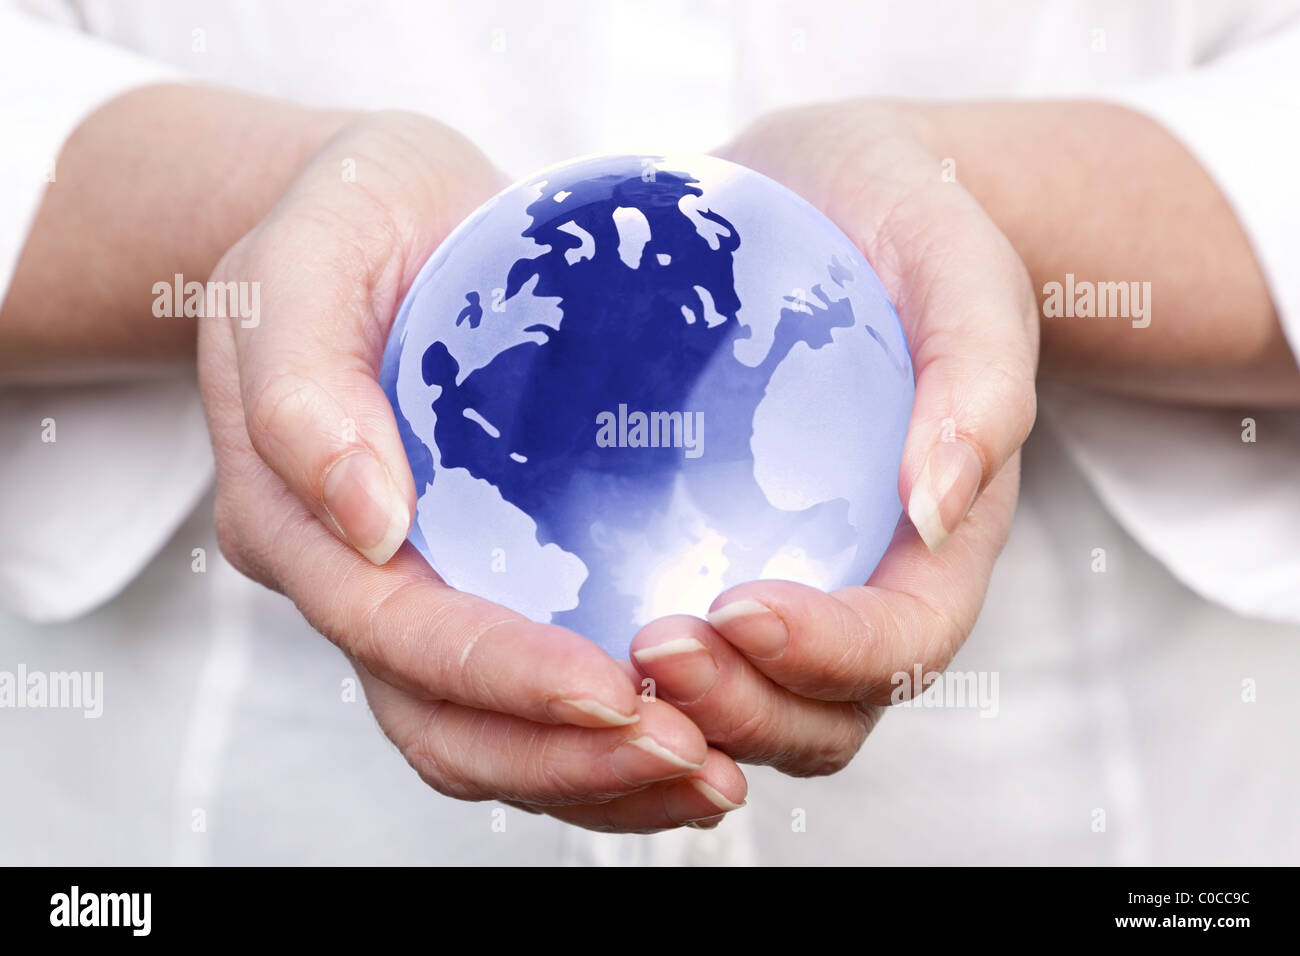 Foto de mujer sosteniendo un globo de cristal en sus manos, el concepto de imagen global a escala mundial y temas afines. Foto de stock